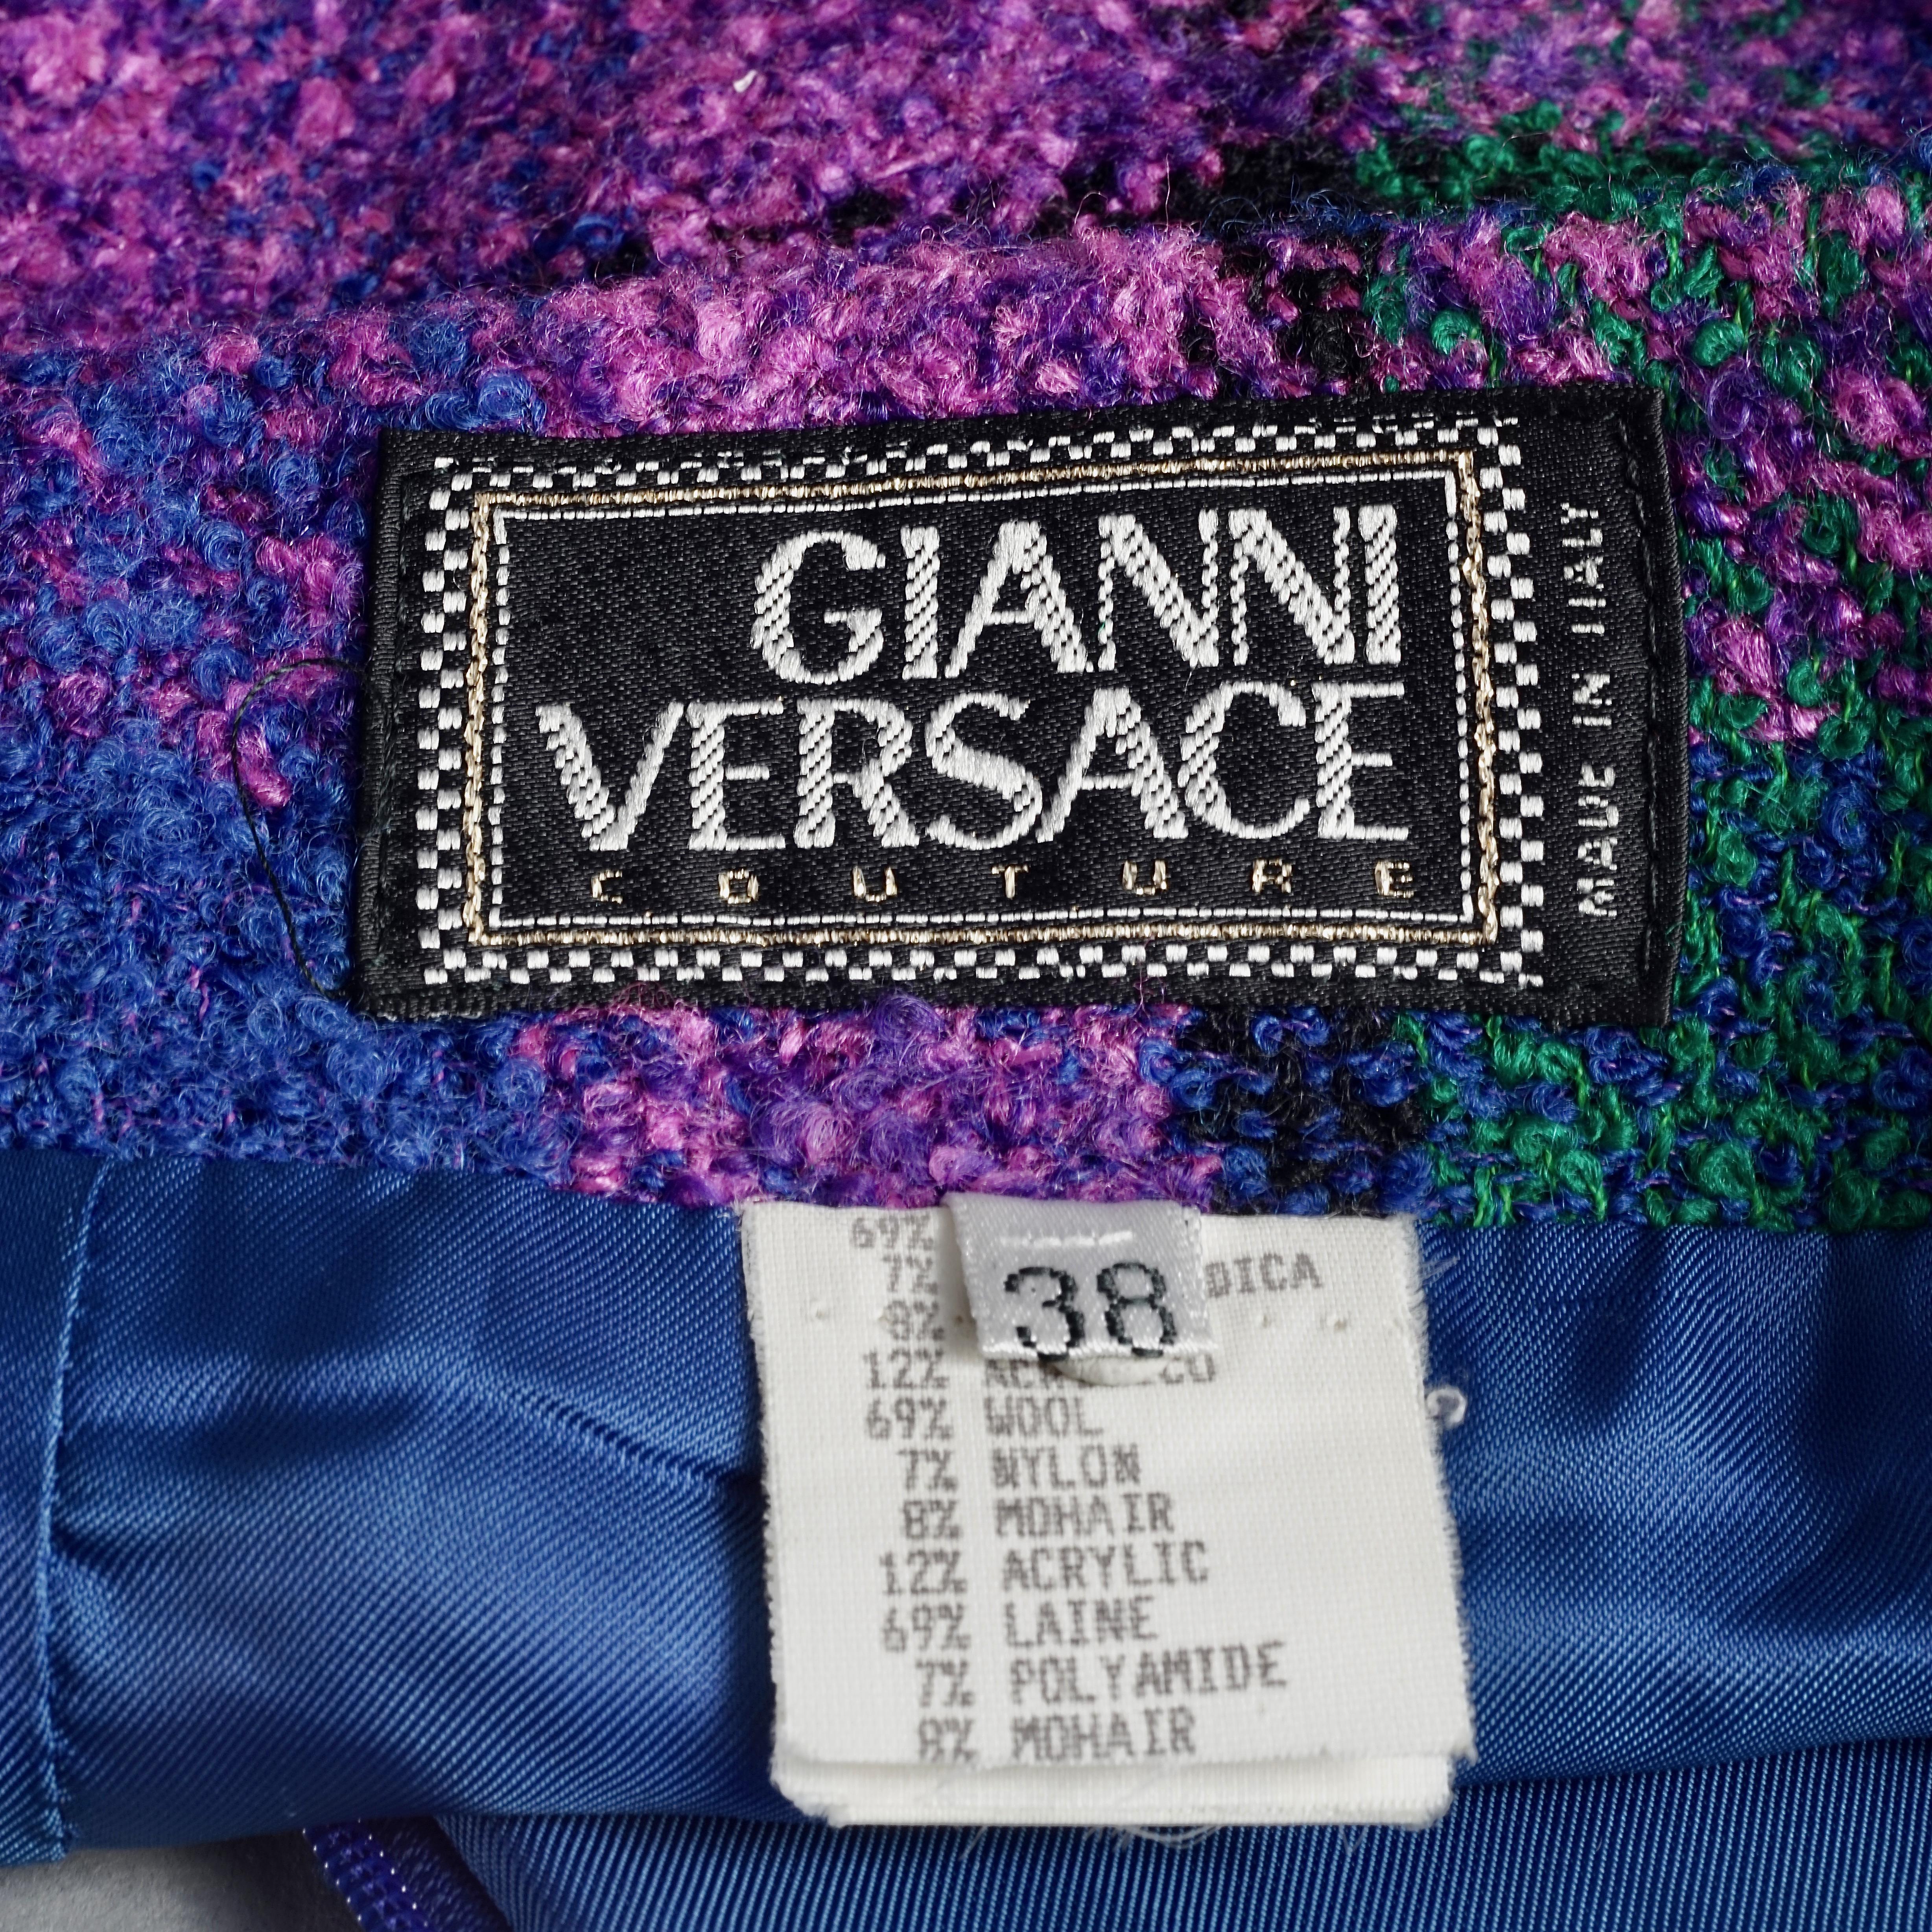 Vintage 1991 A/W GIANNI VERSACE Couture Plaid Tartan Jacket Skirt Suit 2